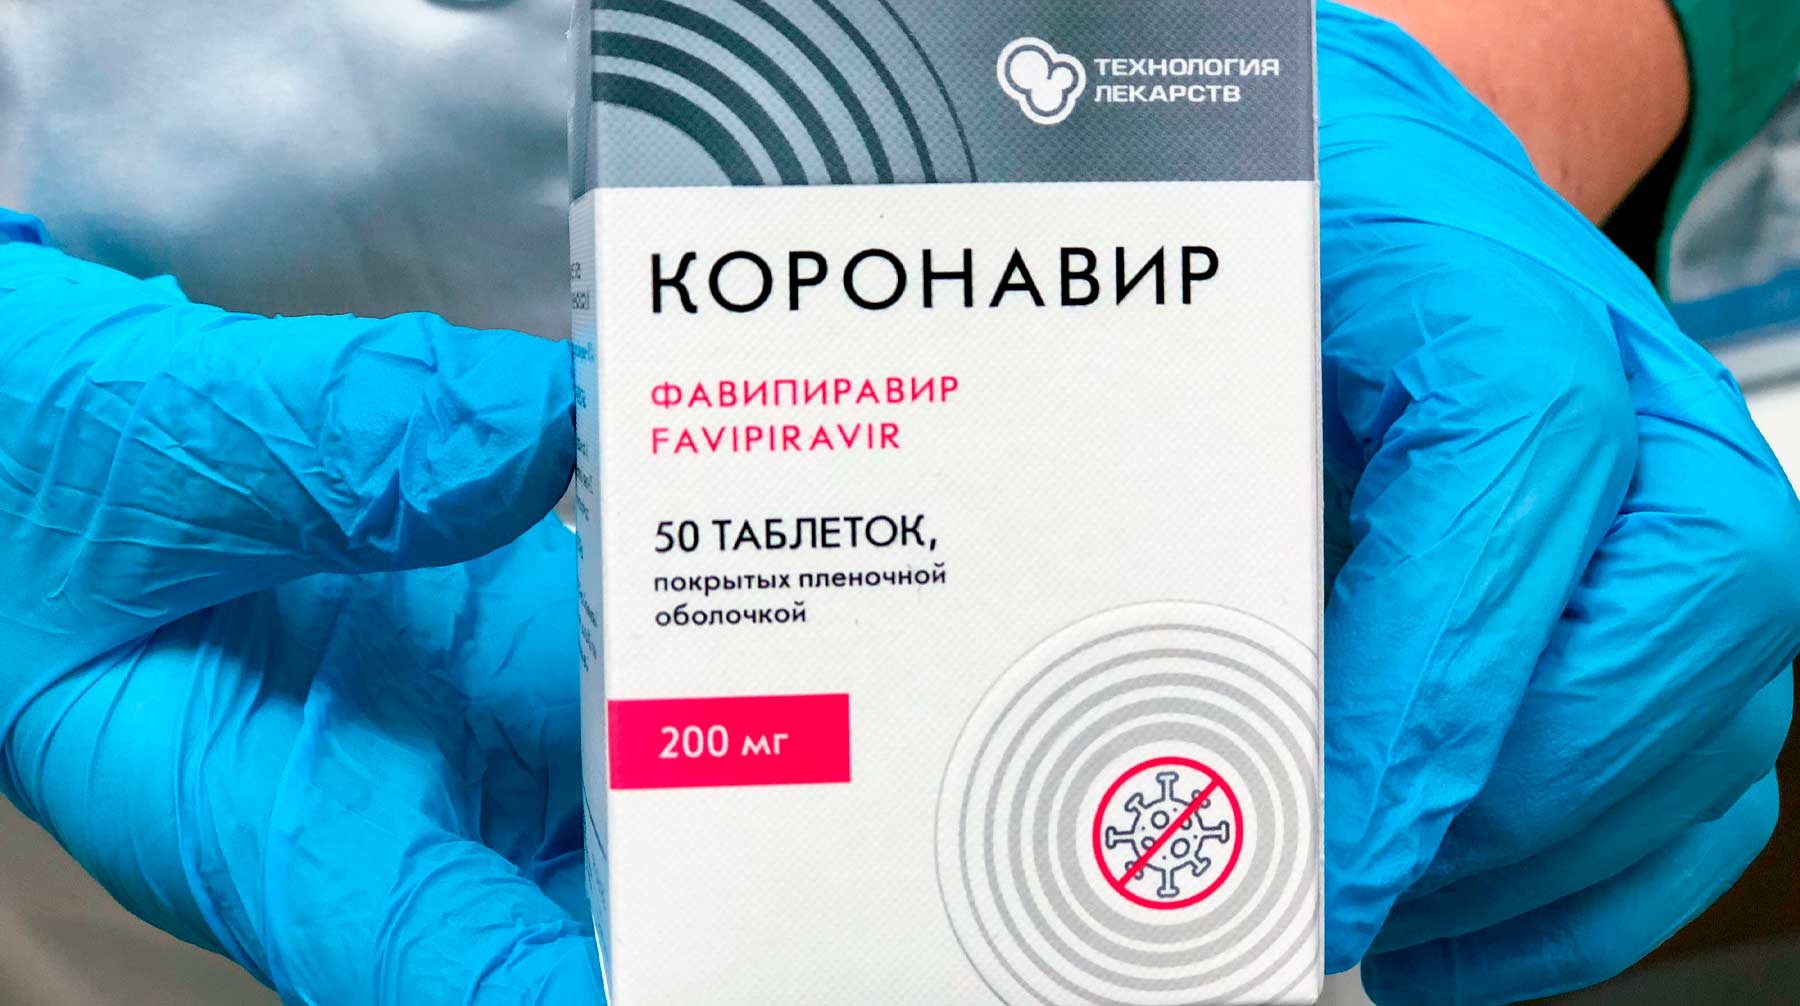 Власти Москвы запустят систему контроля за наличием лекарств от COVID-19 в аптеках